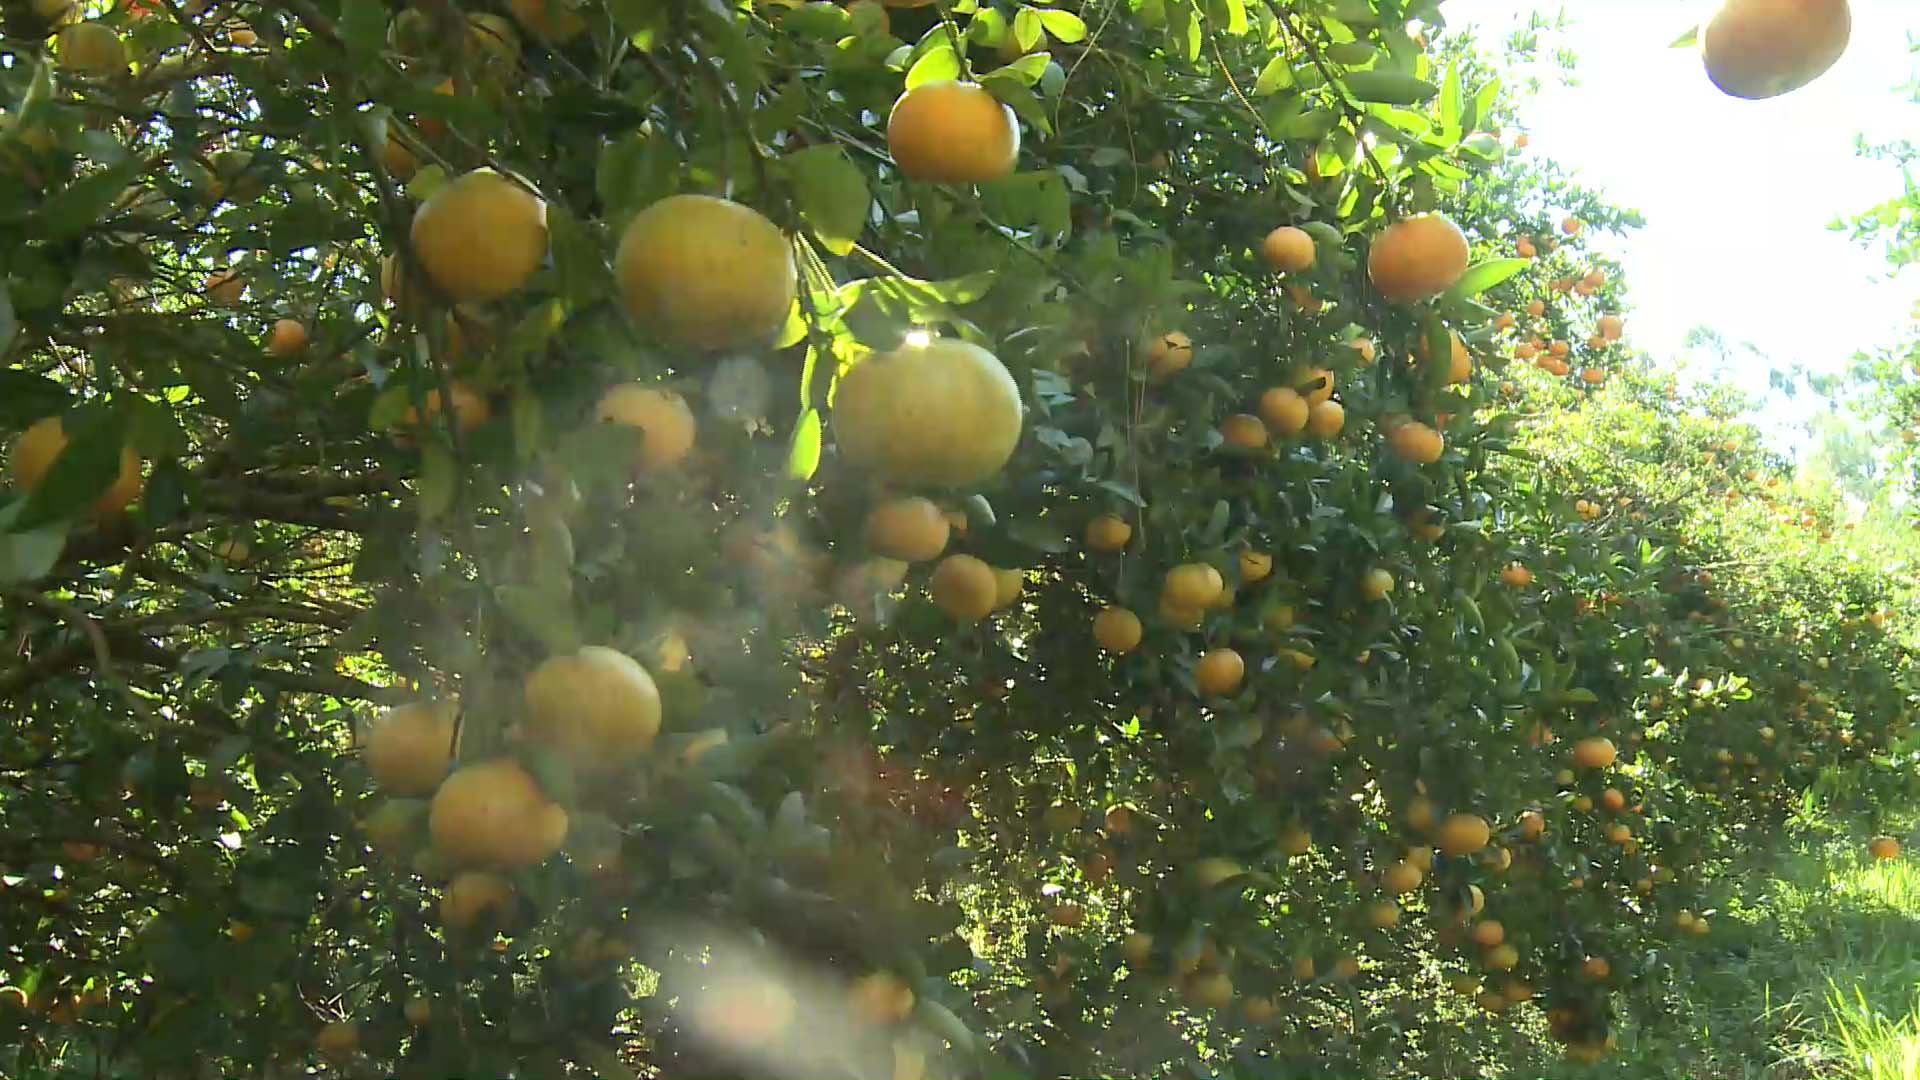 Comenzó la cosecha de mandarinas okitsu en Misiones